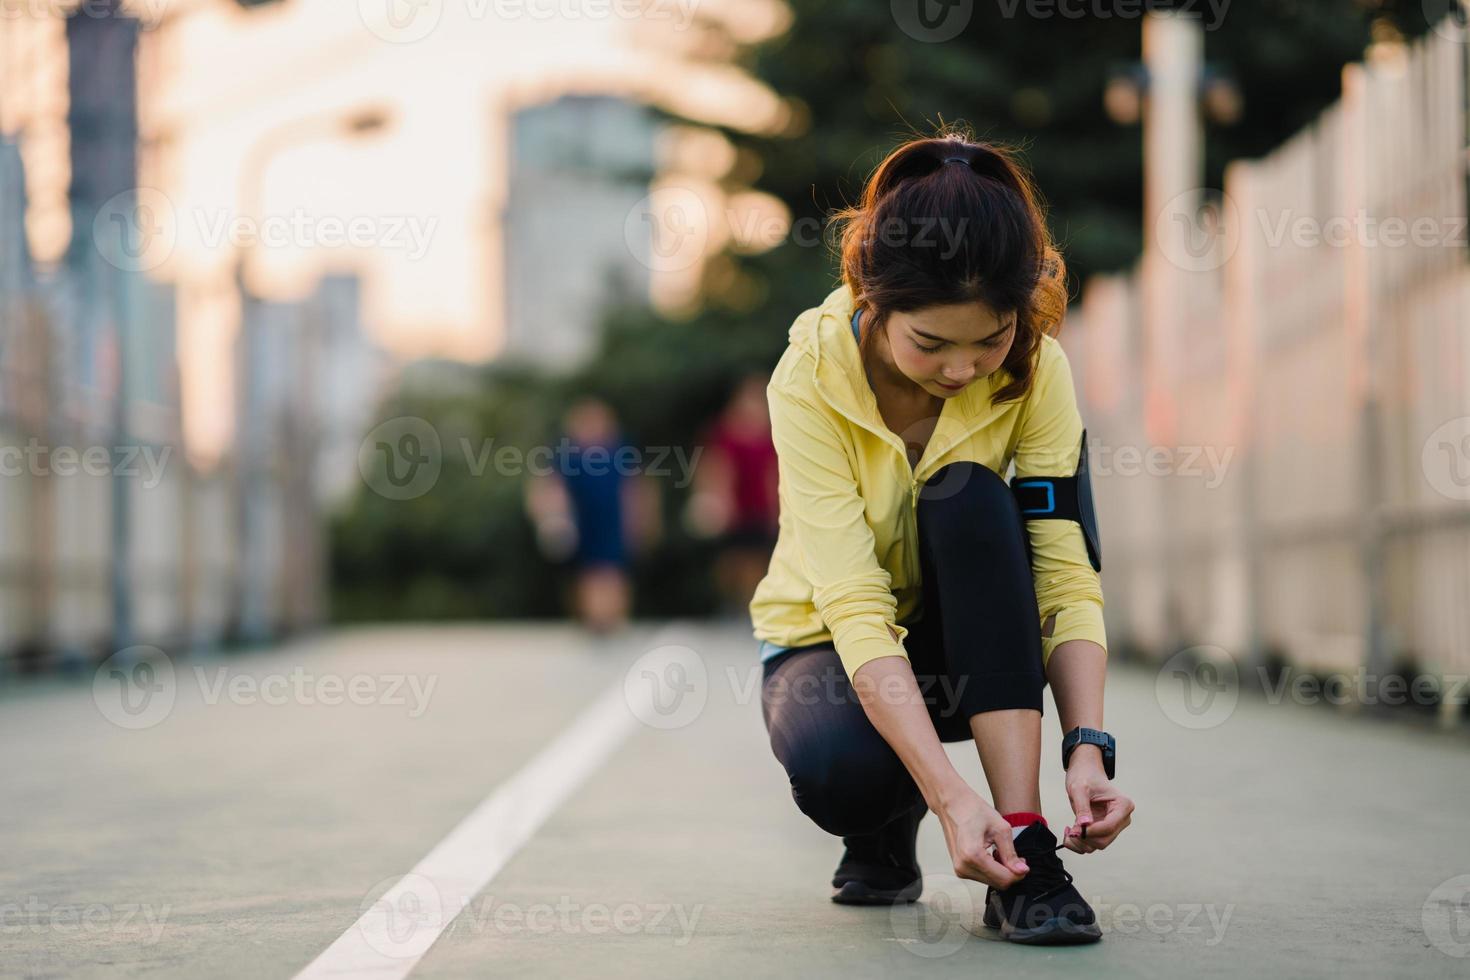 la bella giovane donna atleta asiatica si esercita allacciando i lacci per allenarsi in ambiente urbano. ragazza adolescente giapponese che indossa abiti sportivi sul ponte pedonale al mattino presto. stile di vita sportivo attivo in città. foto